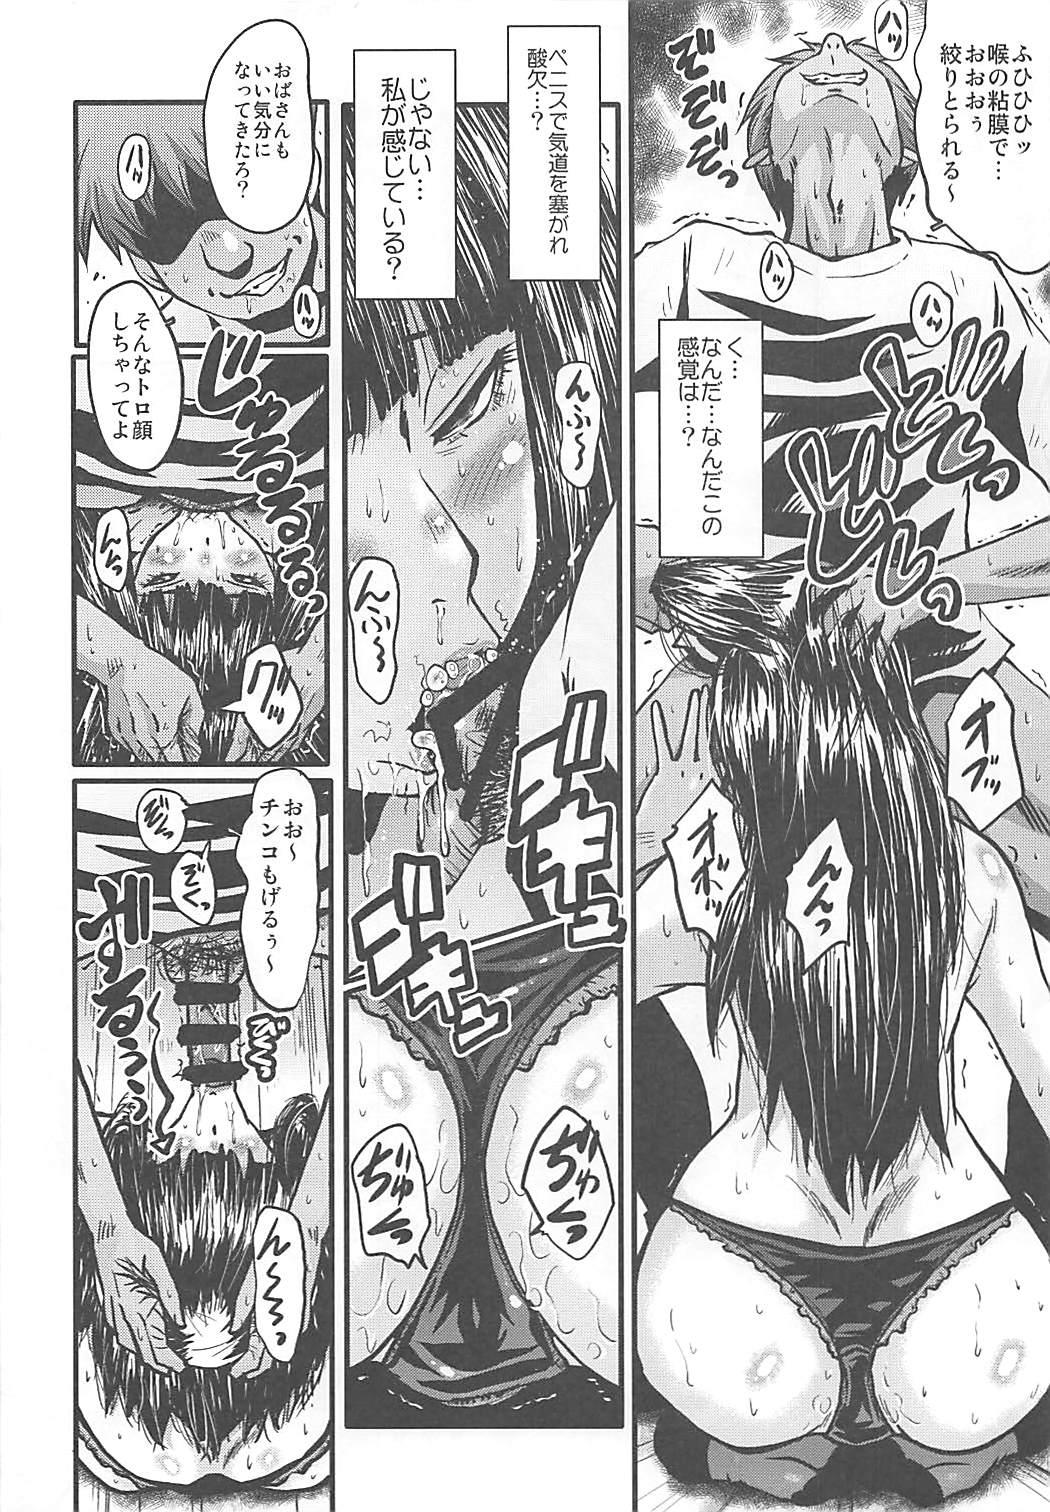 Internal (C93) [Urakata Honpo (SINK)] Urabambi Vol. 56 ~Choubatsubou no Oyako Ana~ Bijin Oyako no Kimeseku Kairaku Jigoku~ (Girls und Panzer) - Girls und panzer Flexible - Page 11